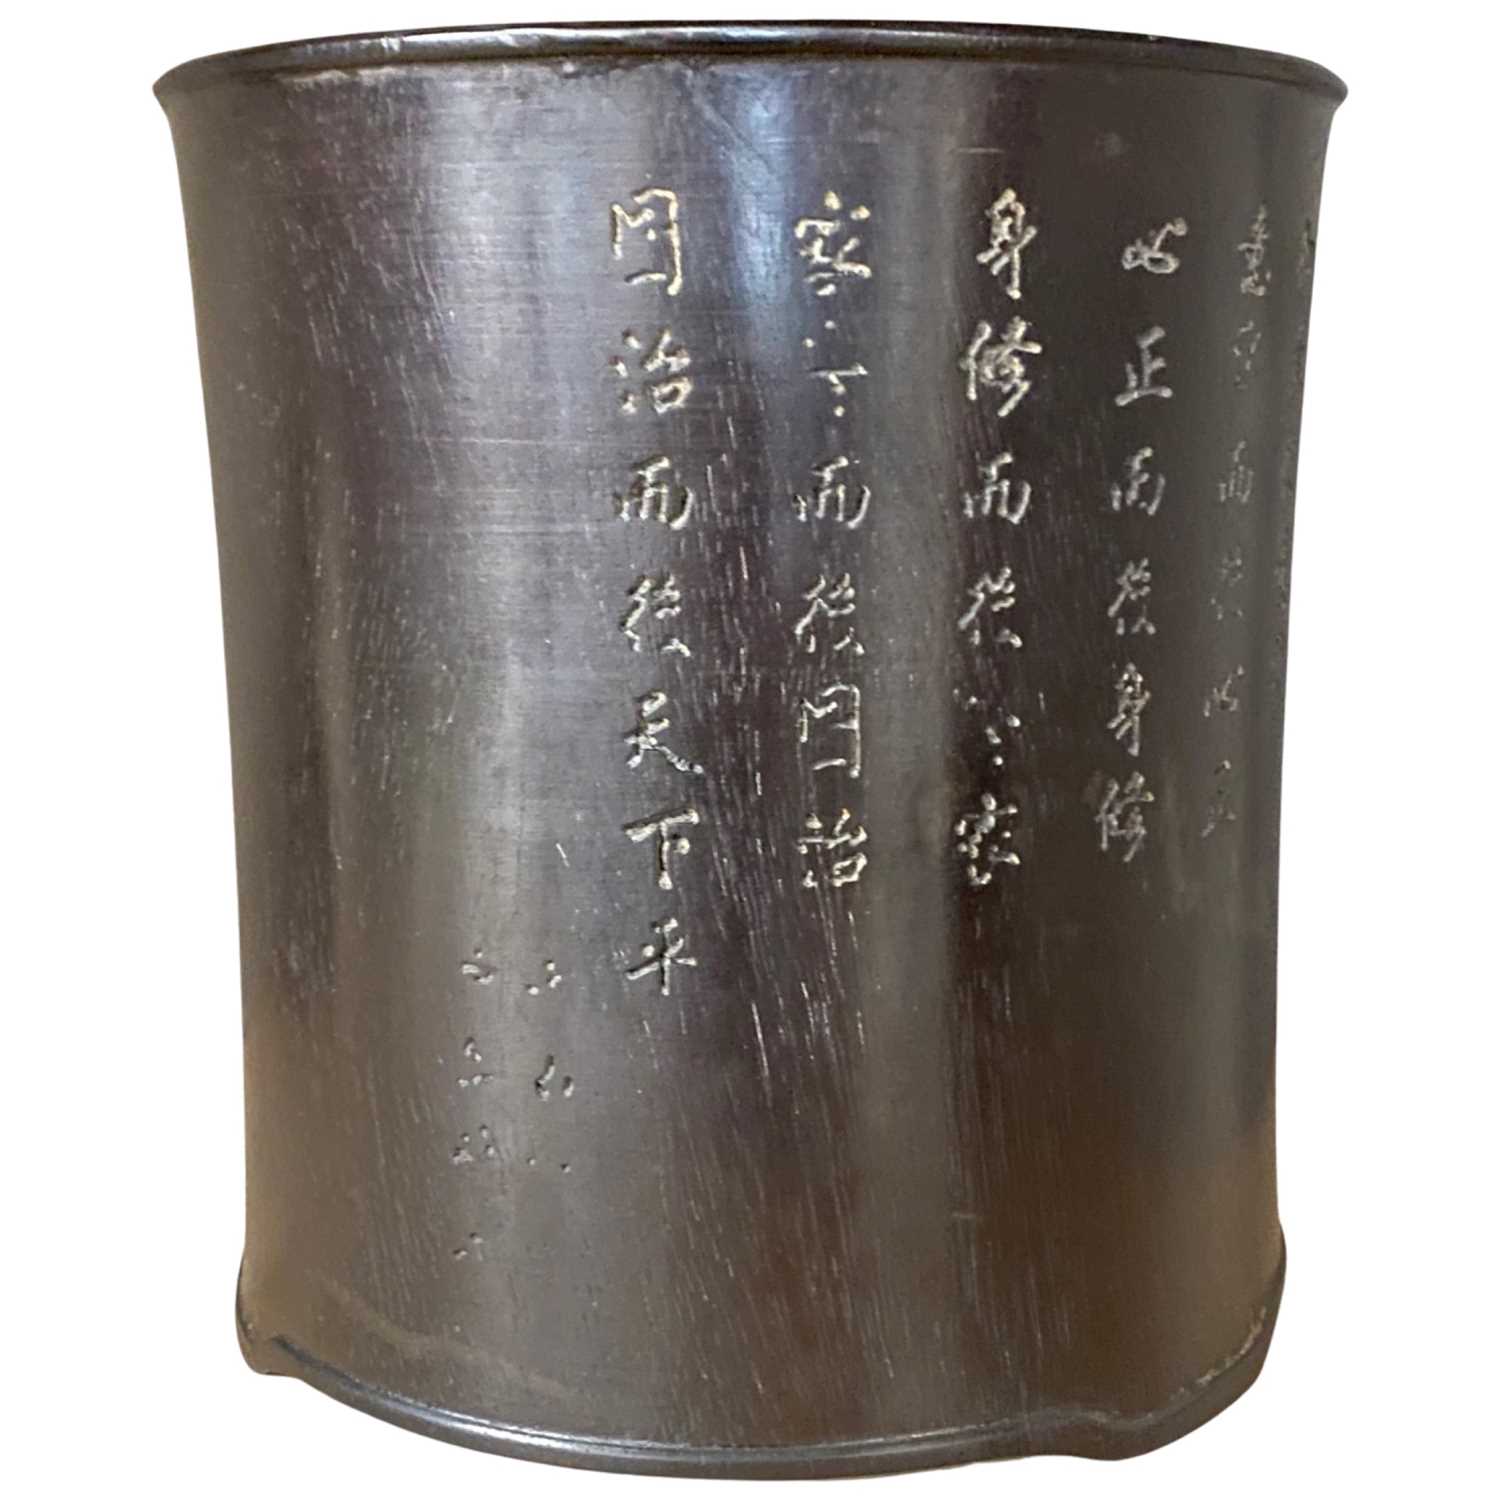 Chinese hardwood brush Pot - Image 2 of 3